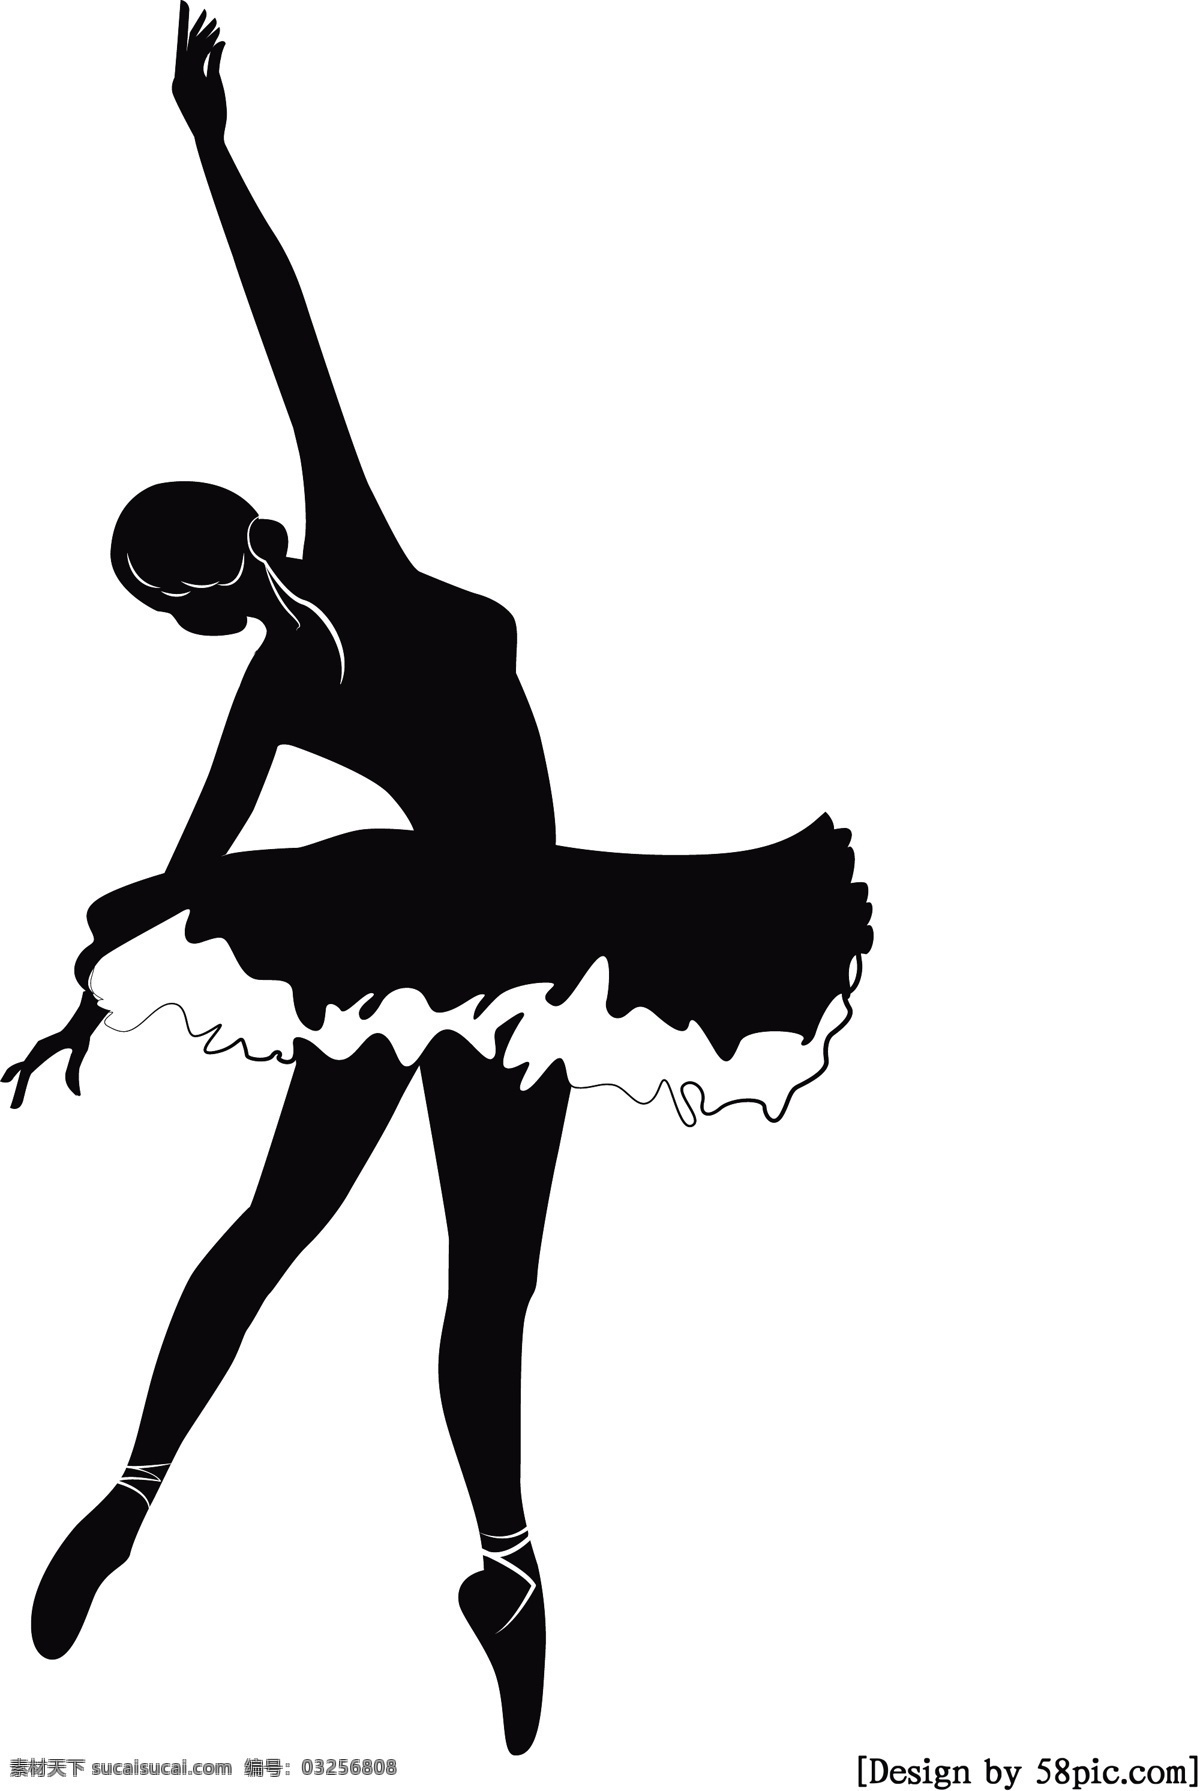 世界 舞蹈 日 人物 黑白 剪影 舞者 舞动 世界舞蹈日 极简 小清新 芭蕾舞者 舞动的人 人物剪影 黑白人物剪影 简约风